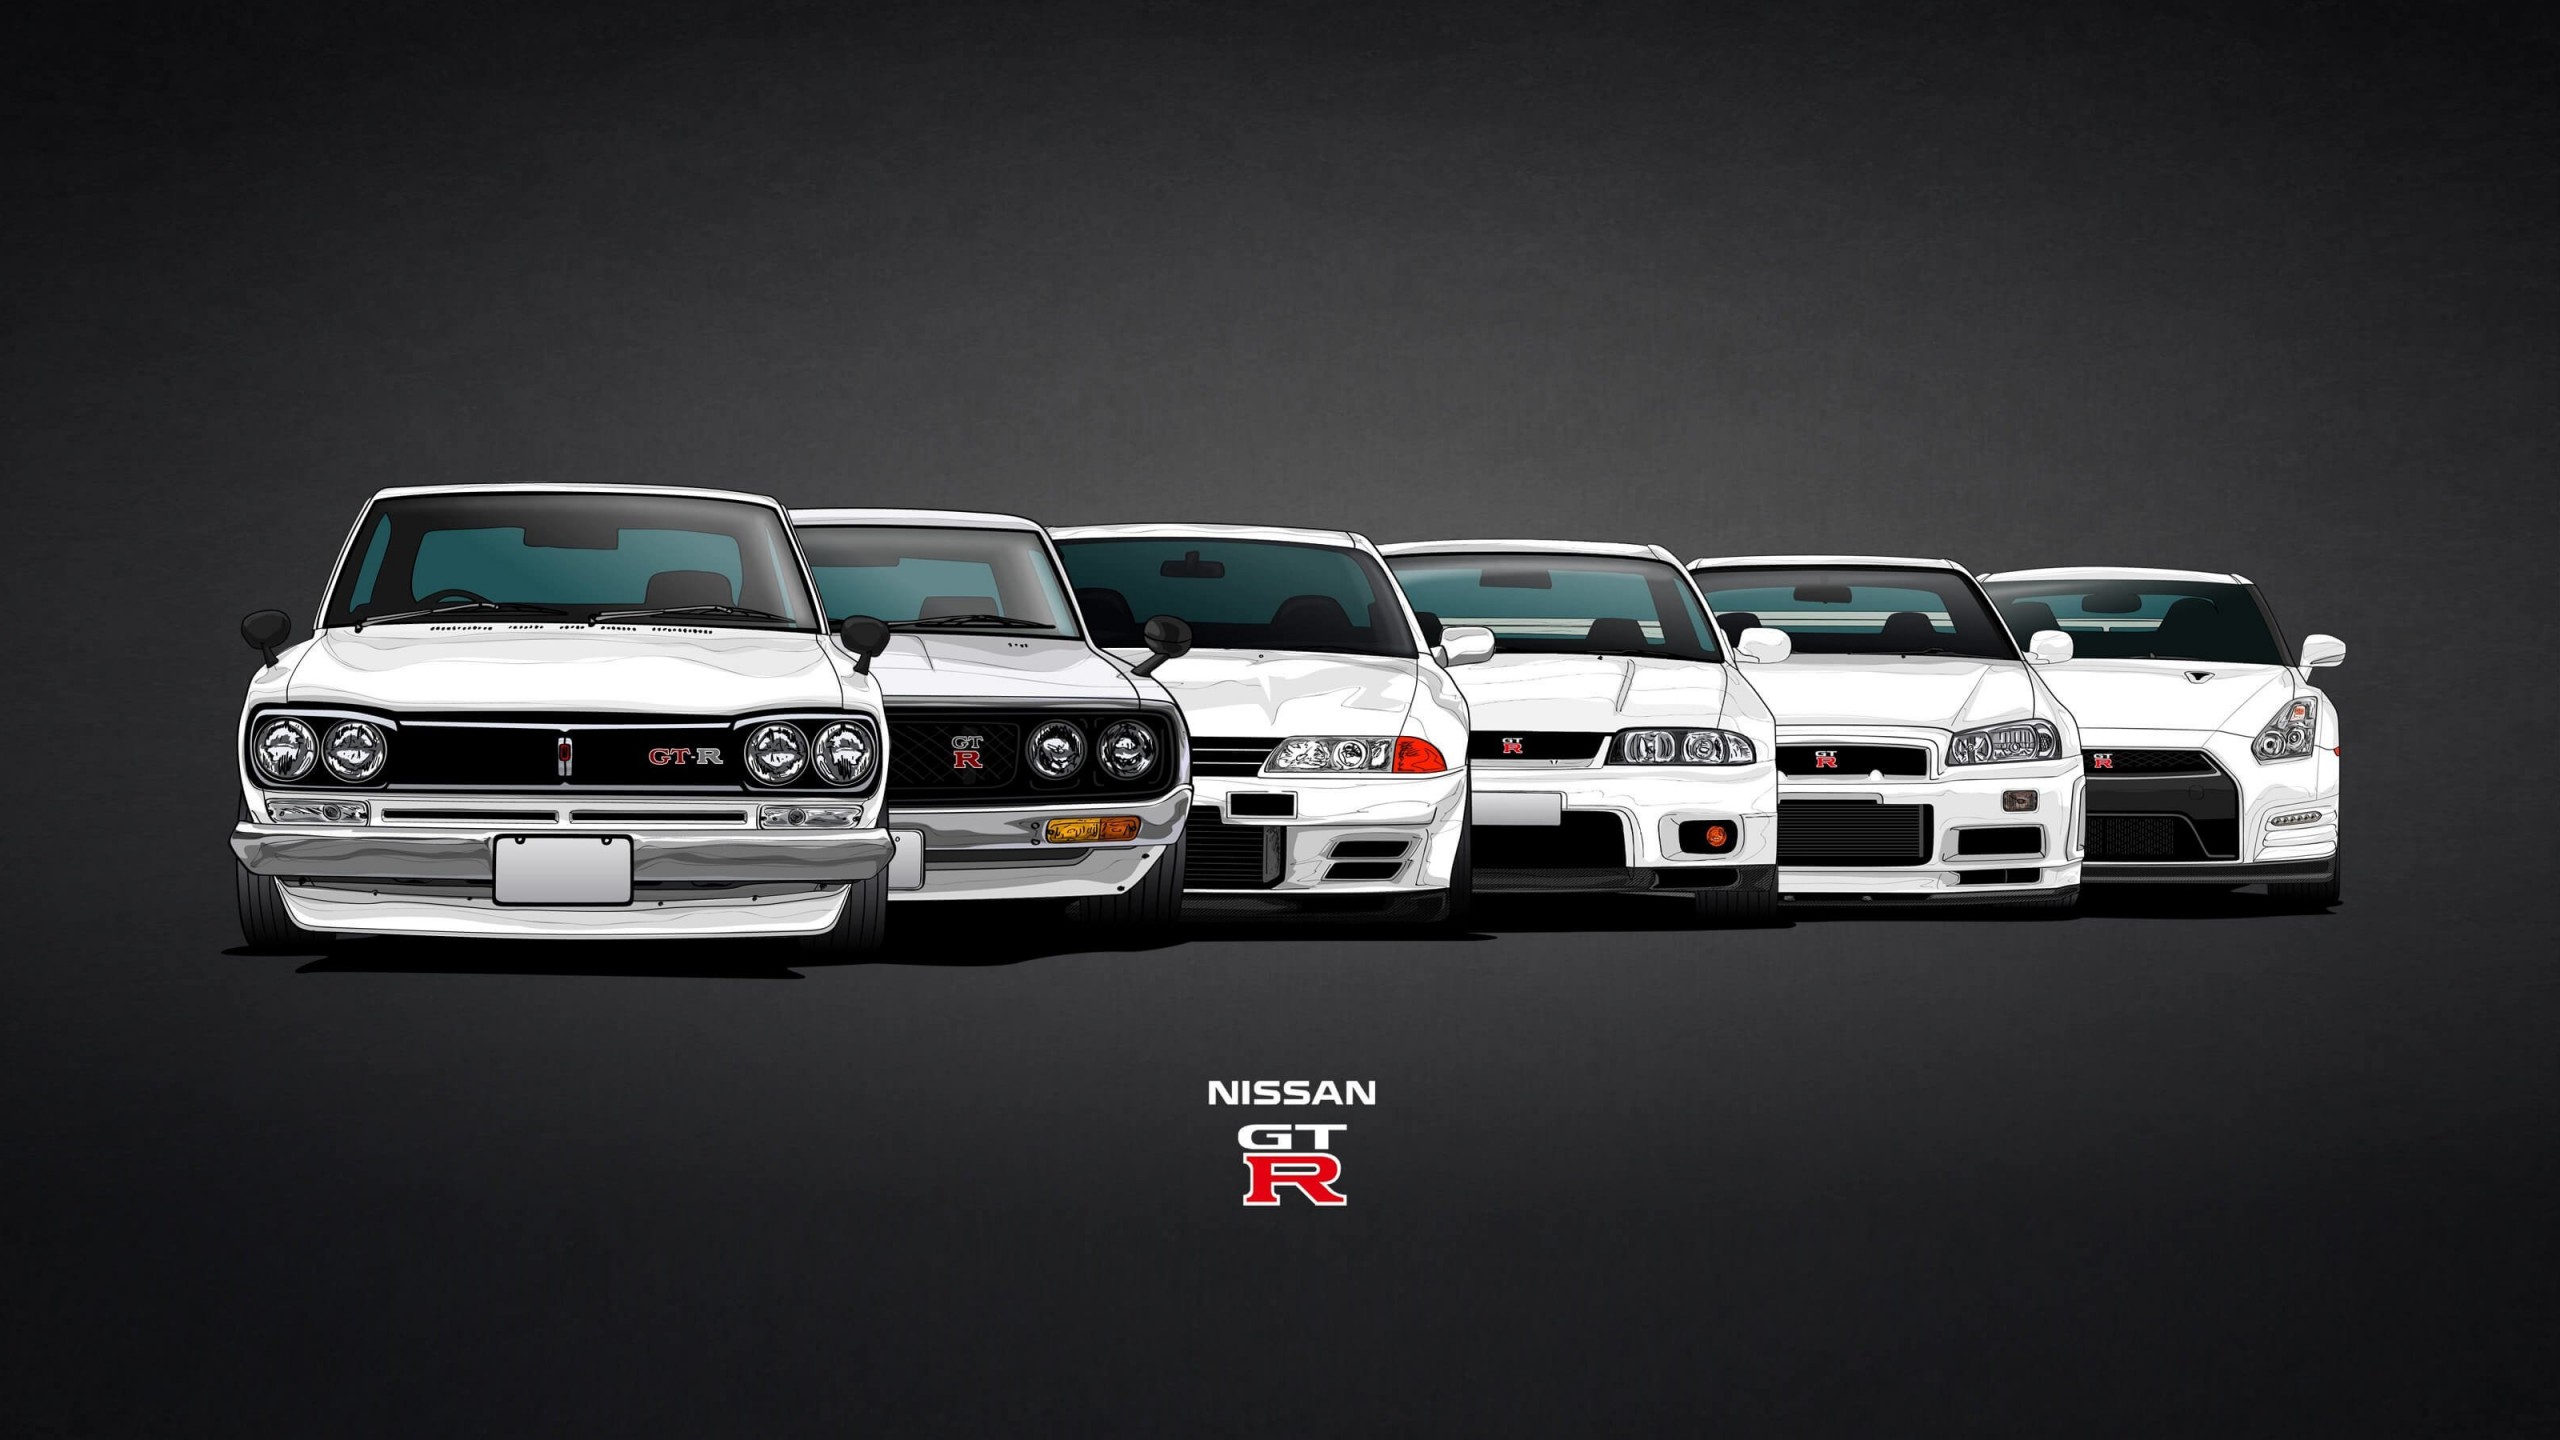 Nissan Skyline GT-R Evolution Wallpaper for Social Media YouTube Channel Art